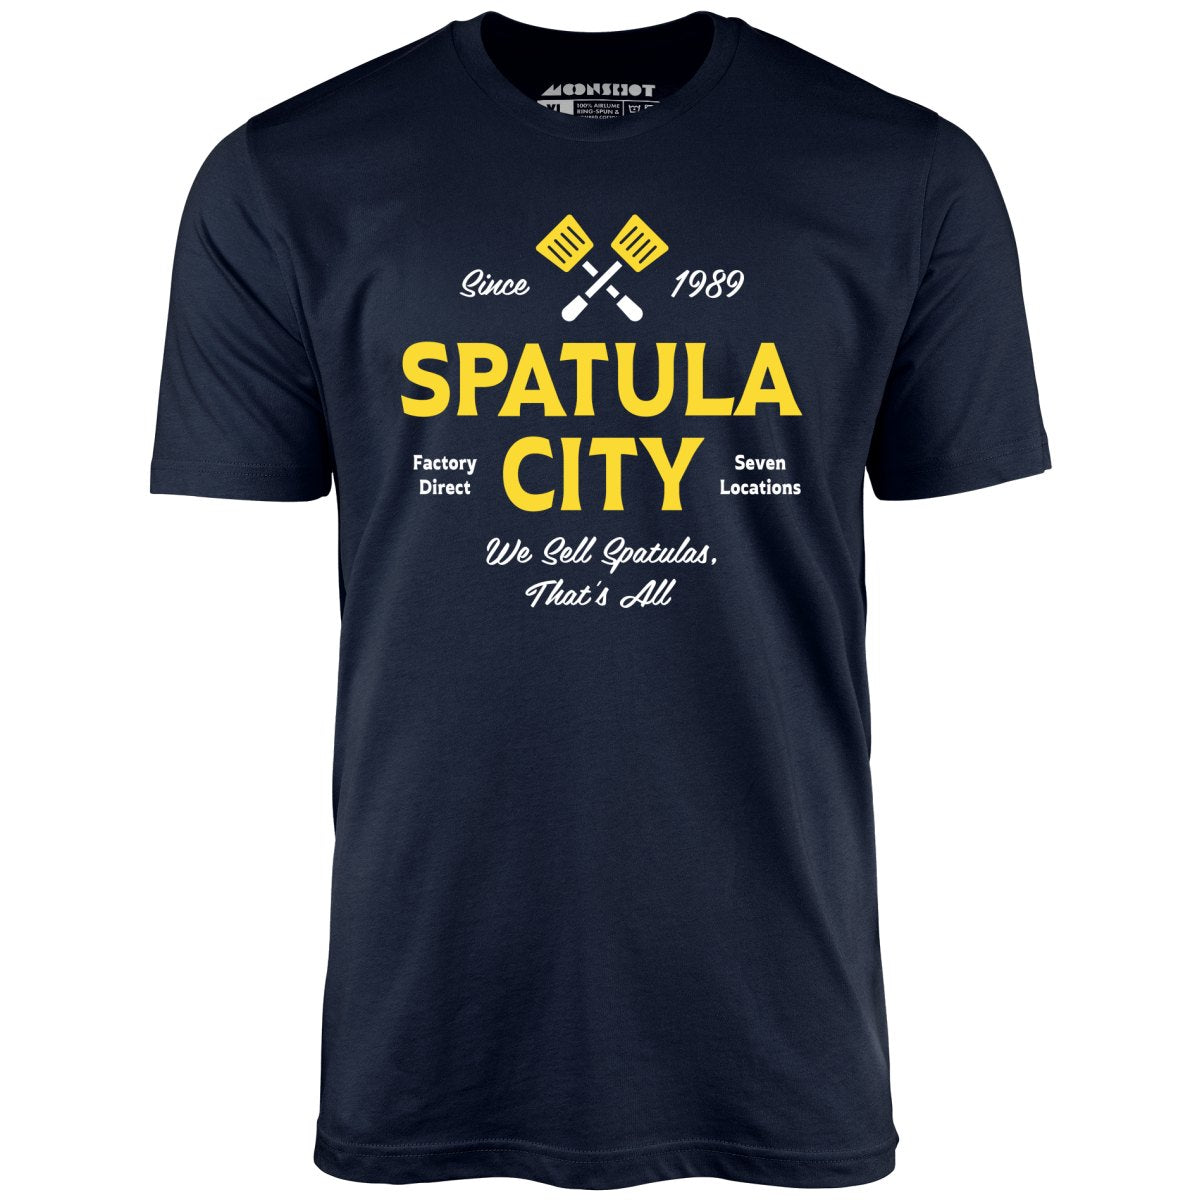 Spatula City - Unisex T-Shirt